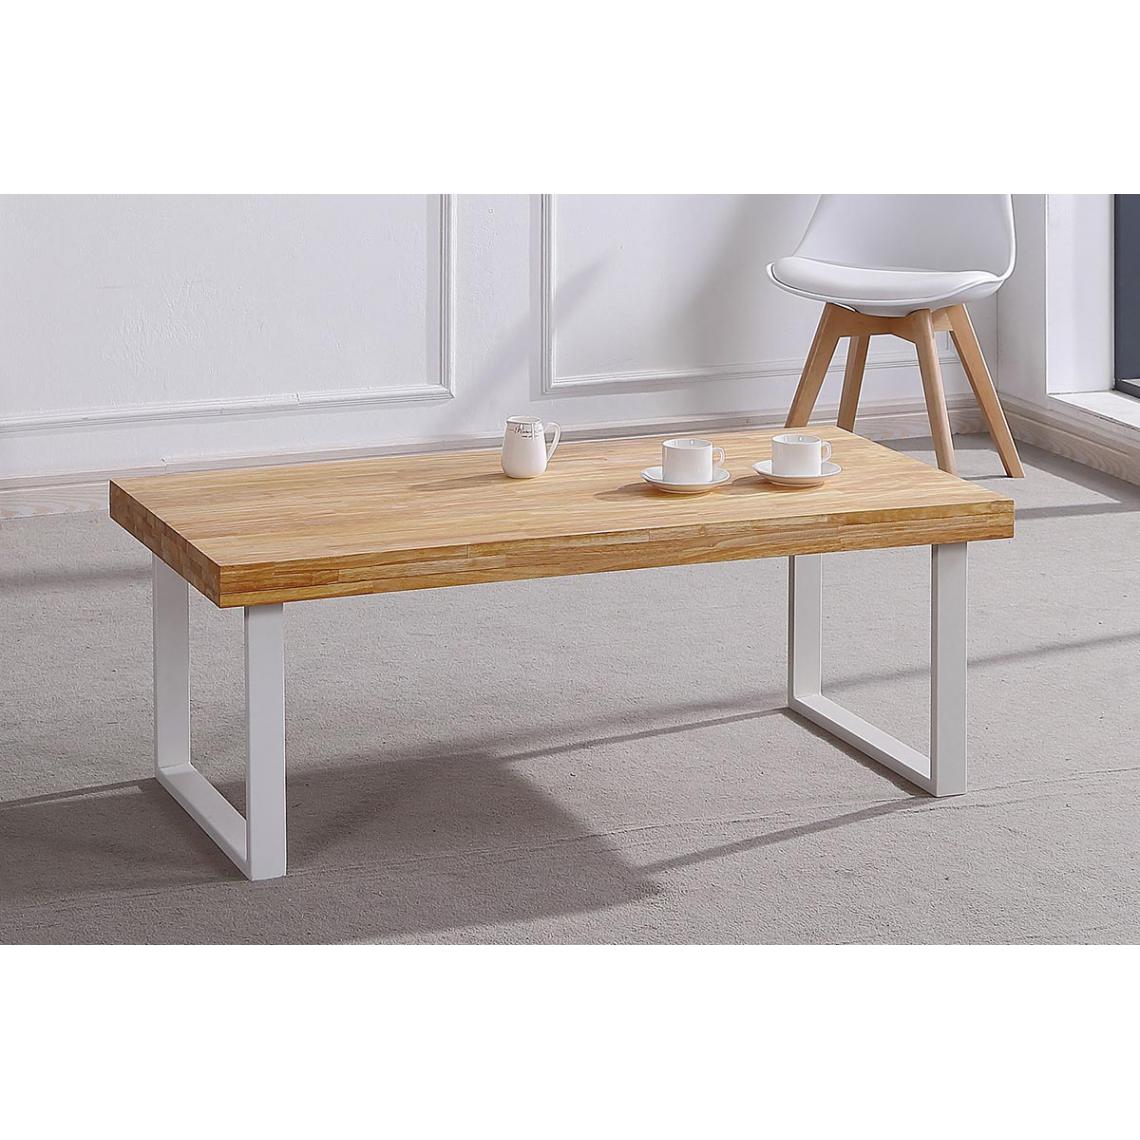 Pegane - Table basse en bois coloris chêne nordique / pieds blanc - Longueur 120 x profondeur 60 x hauteur 43 cm - Tables basses